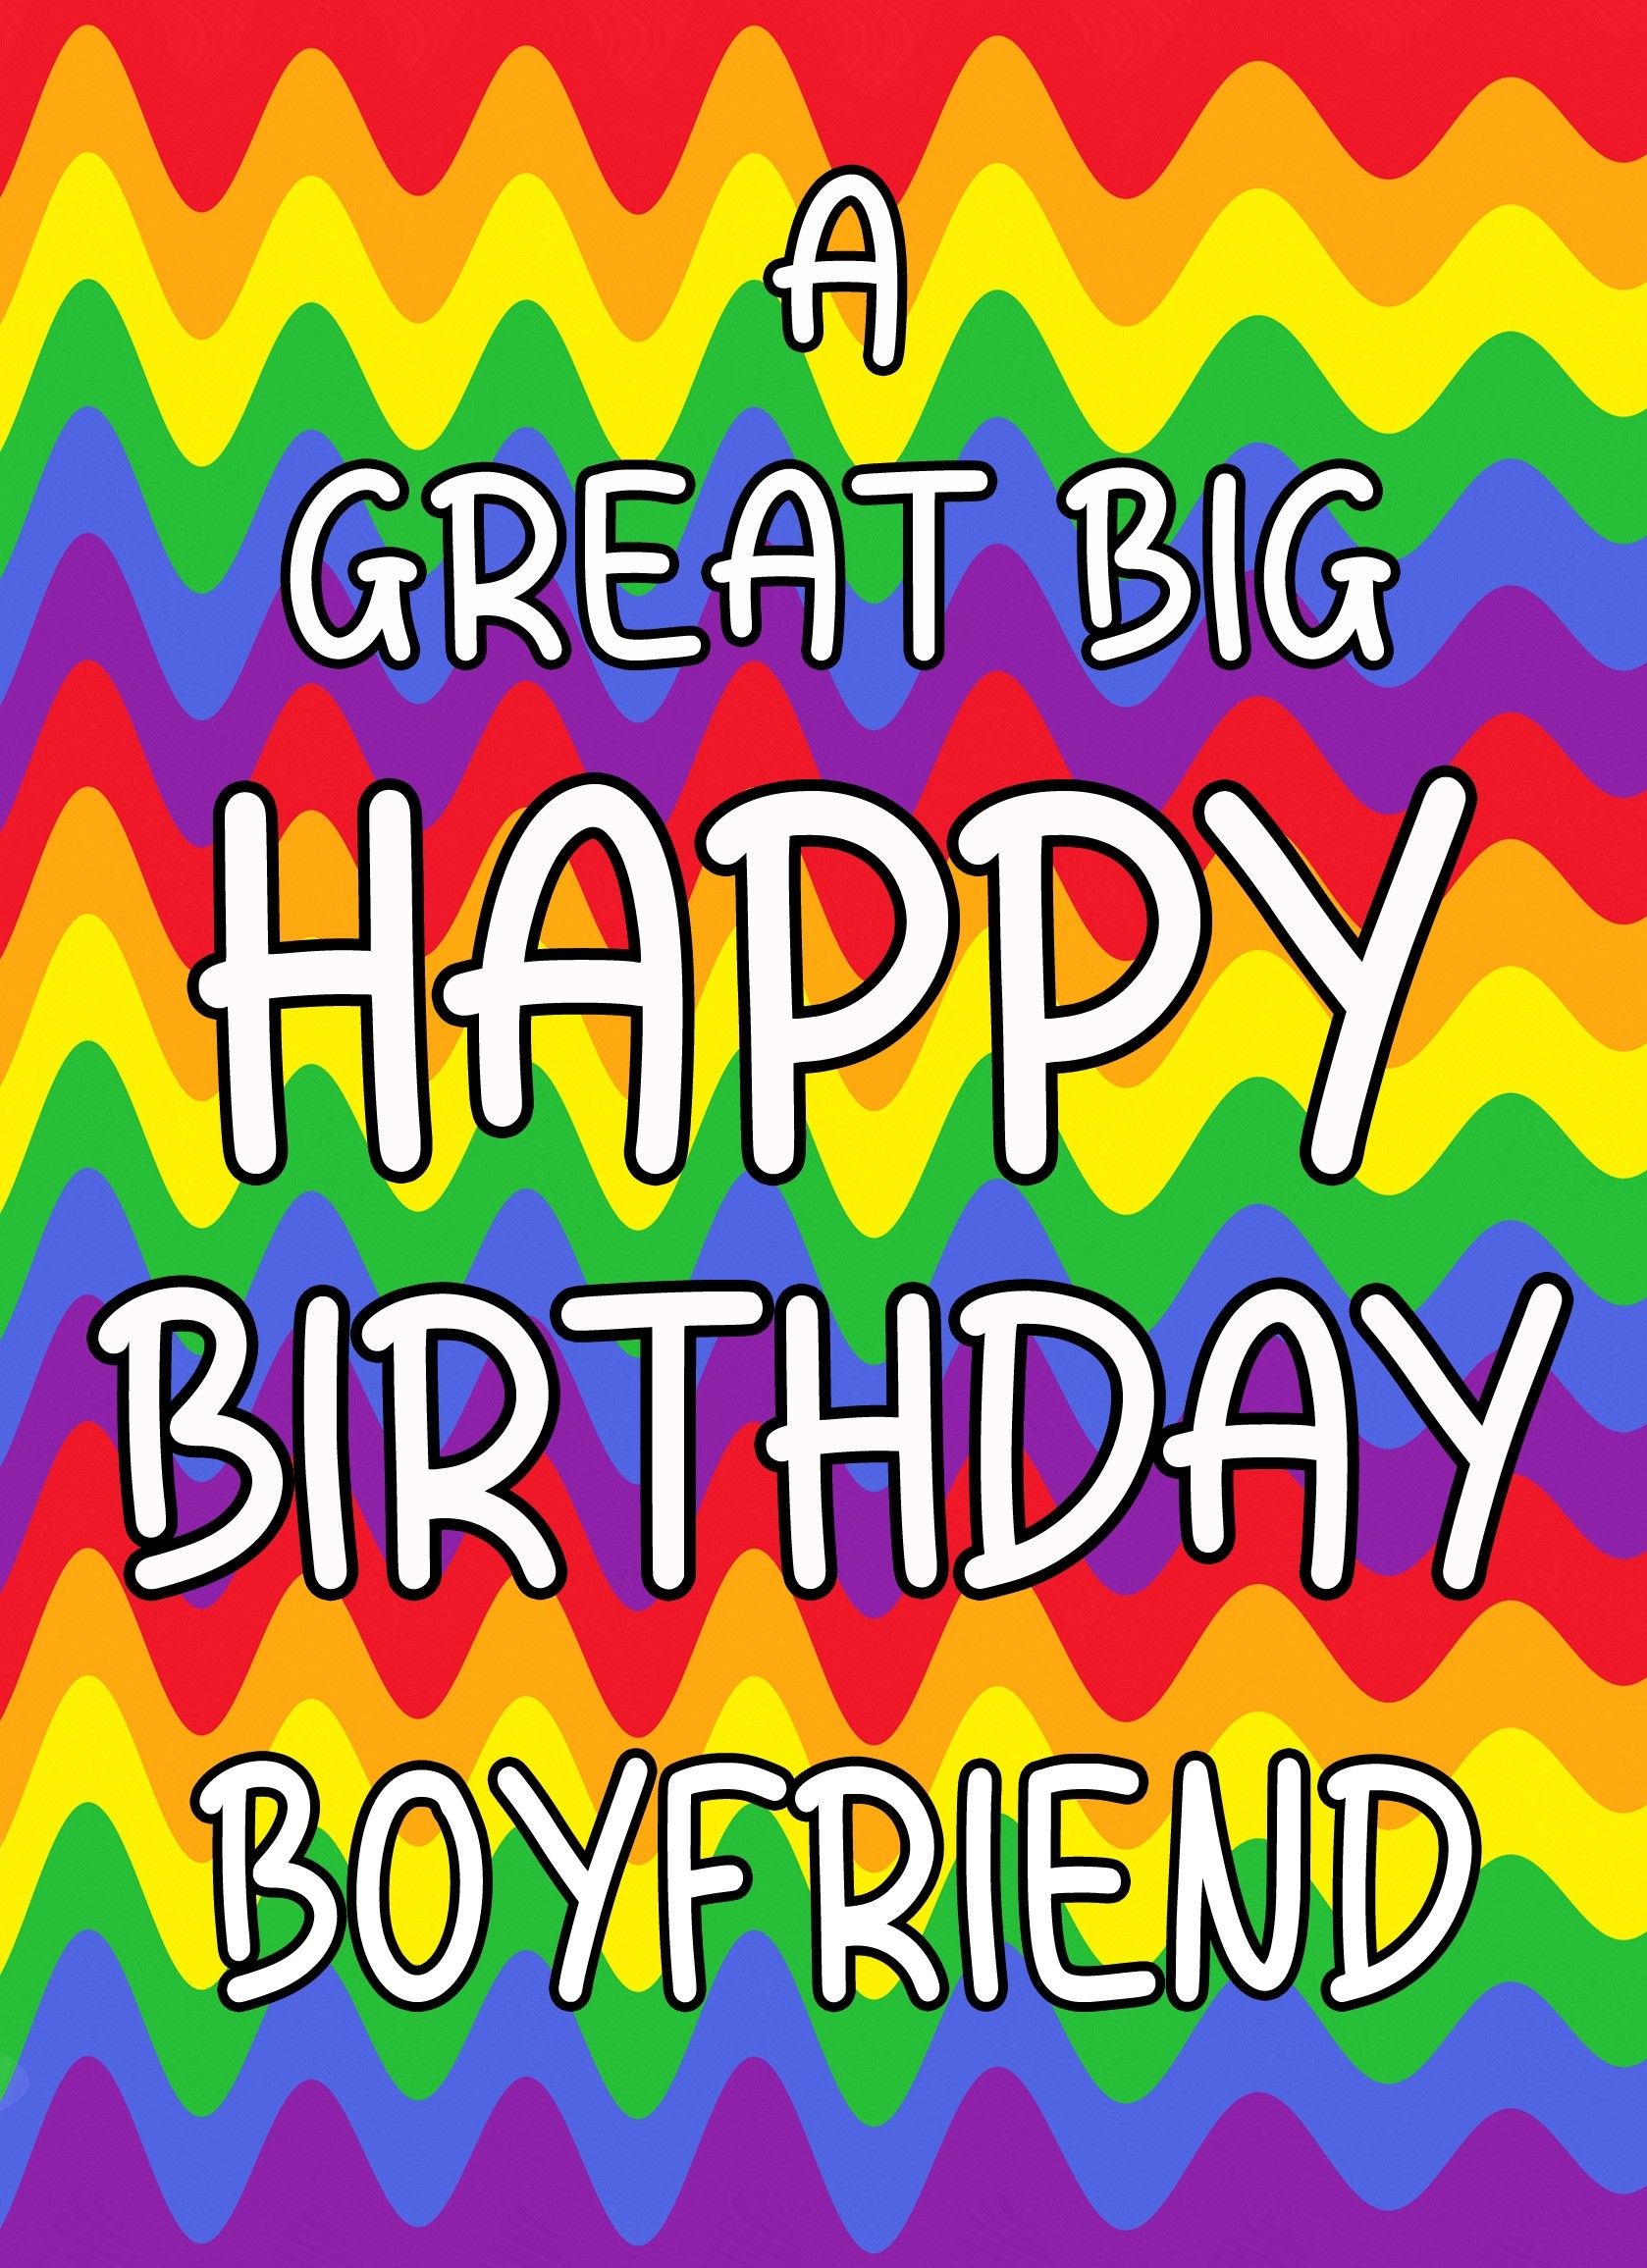 Happy Birthday 'Boyfriend' Greeting Card (Rainbow)